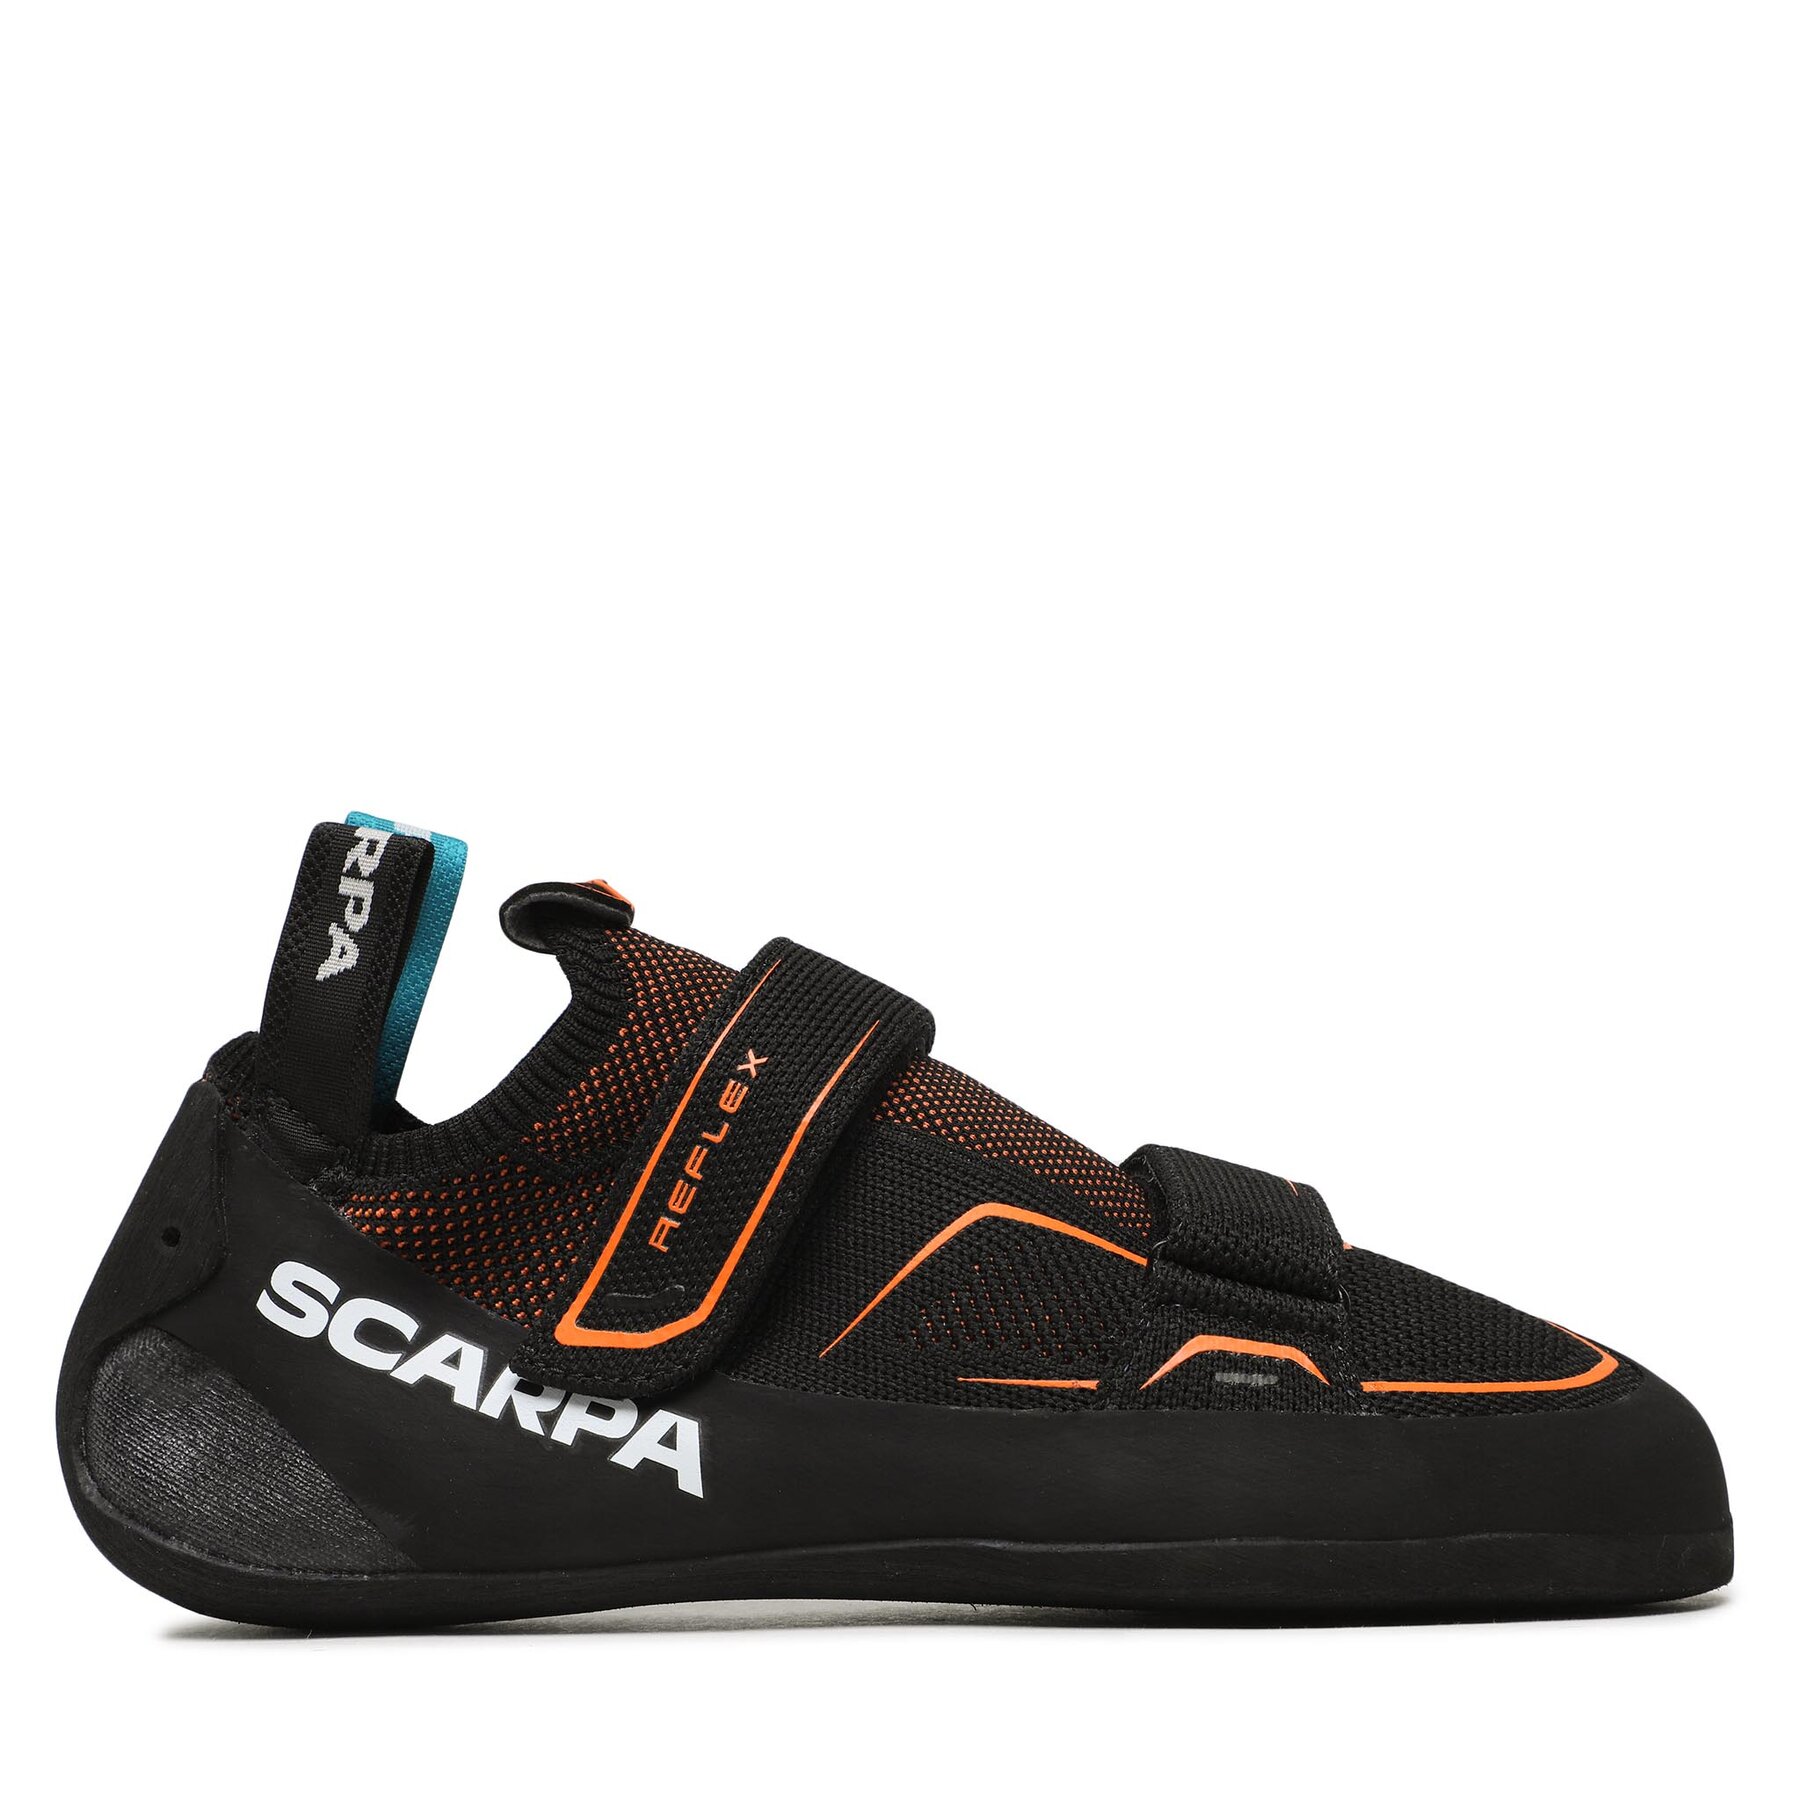 Čevlji Scarpa Reflex V 70067-000 Black/Flame